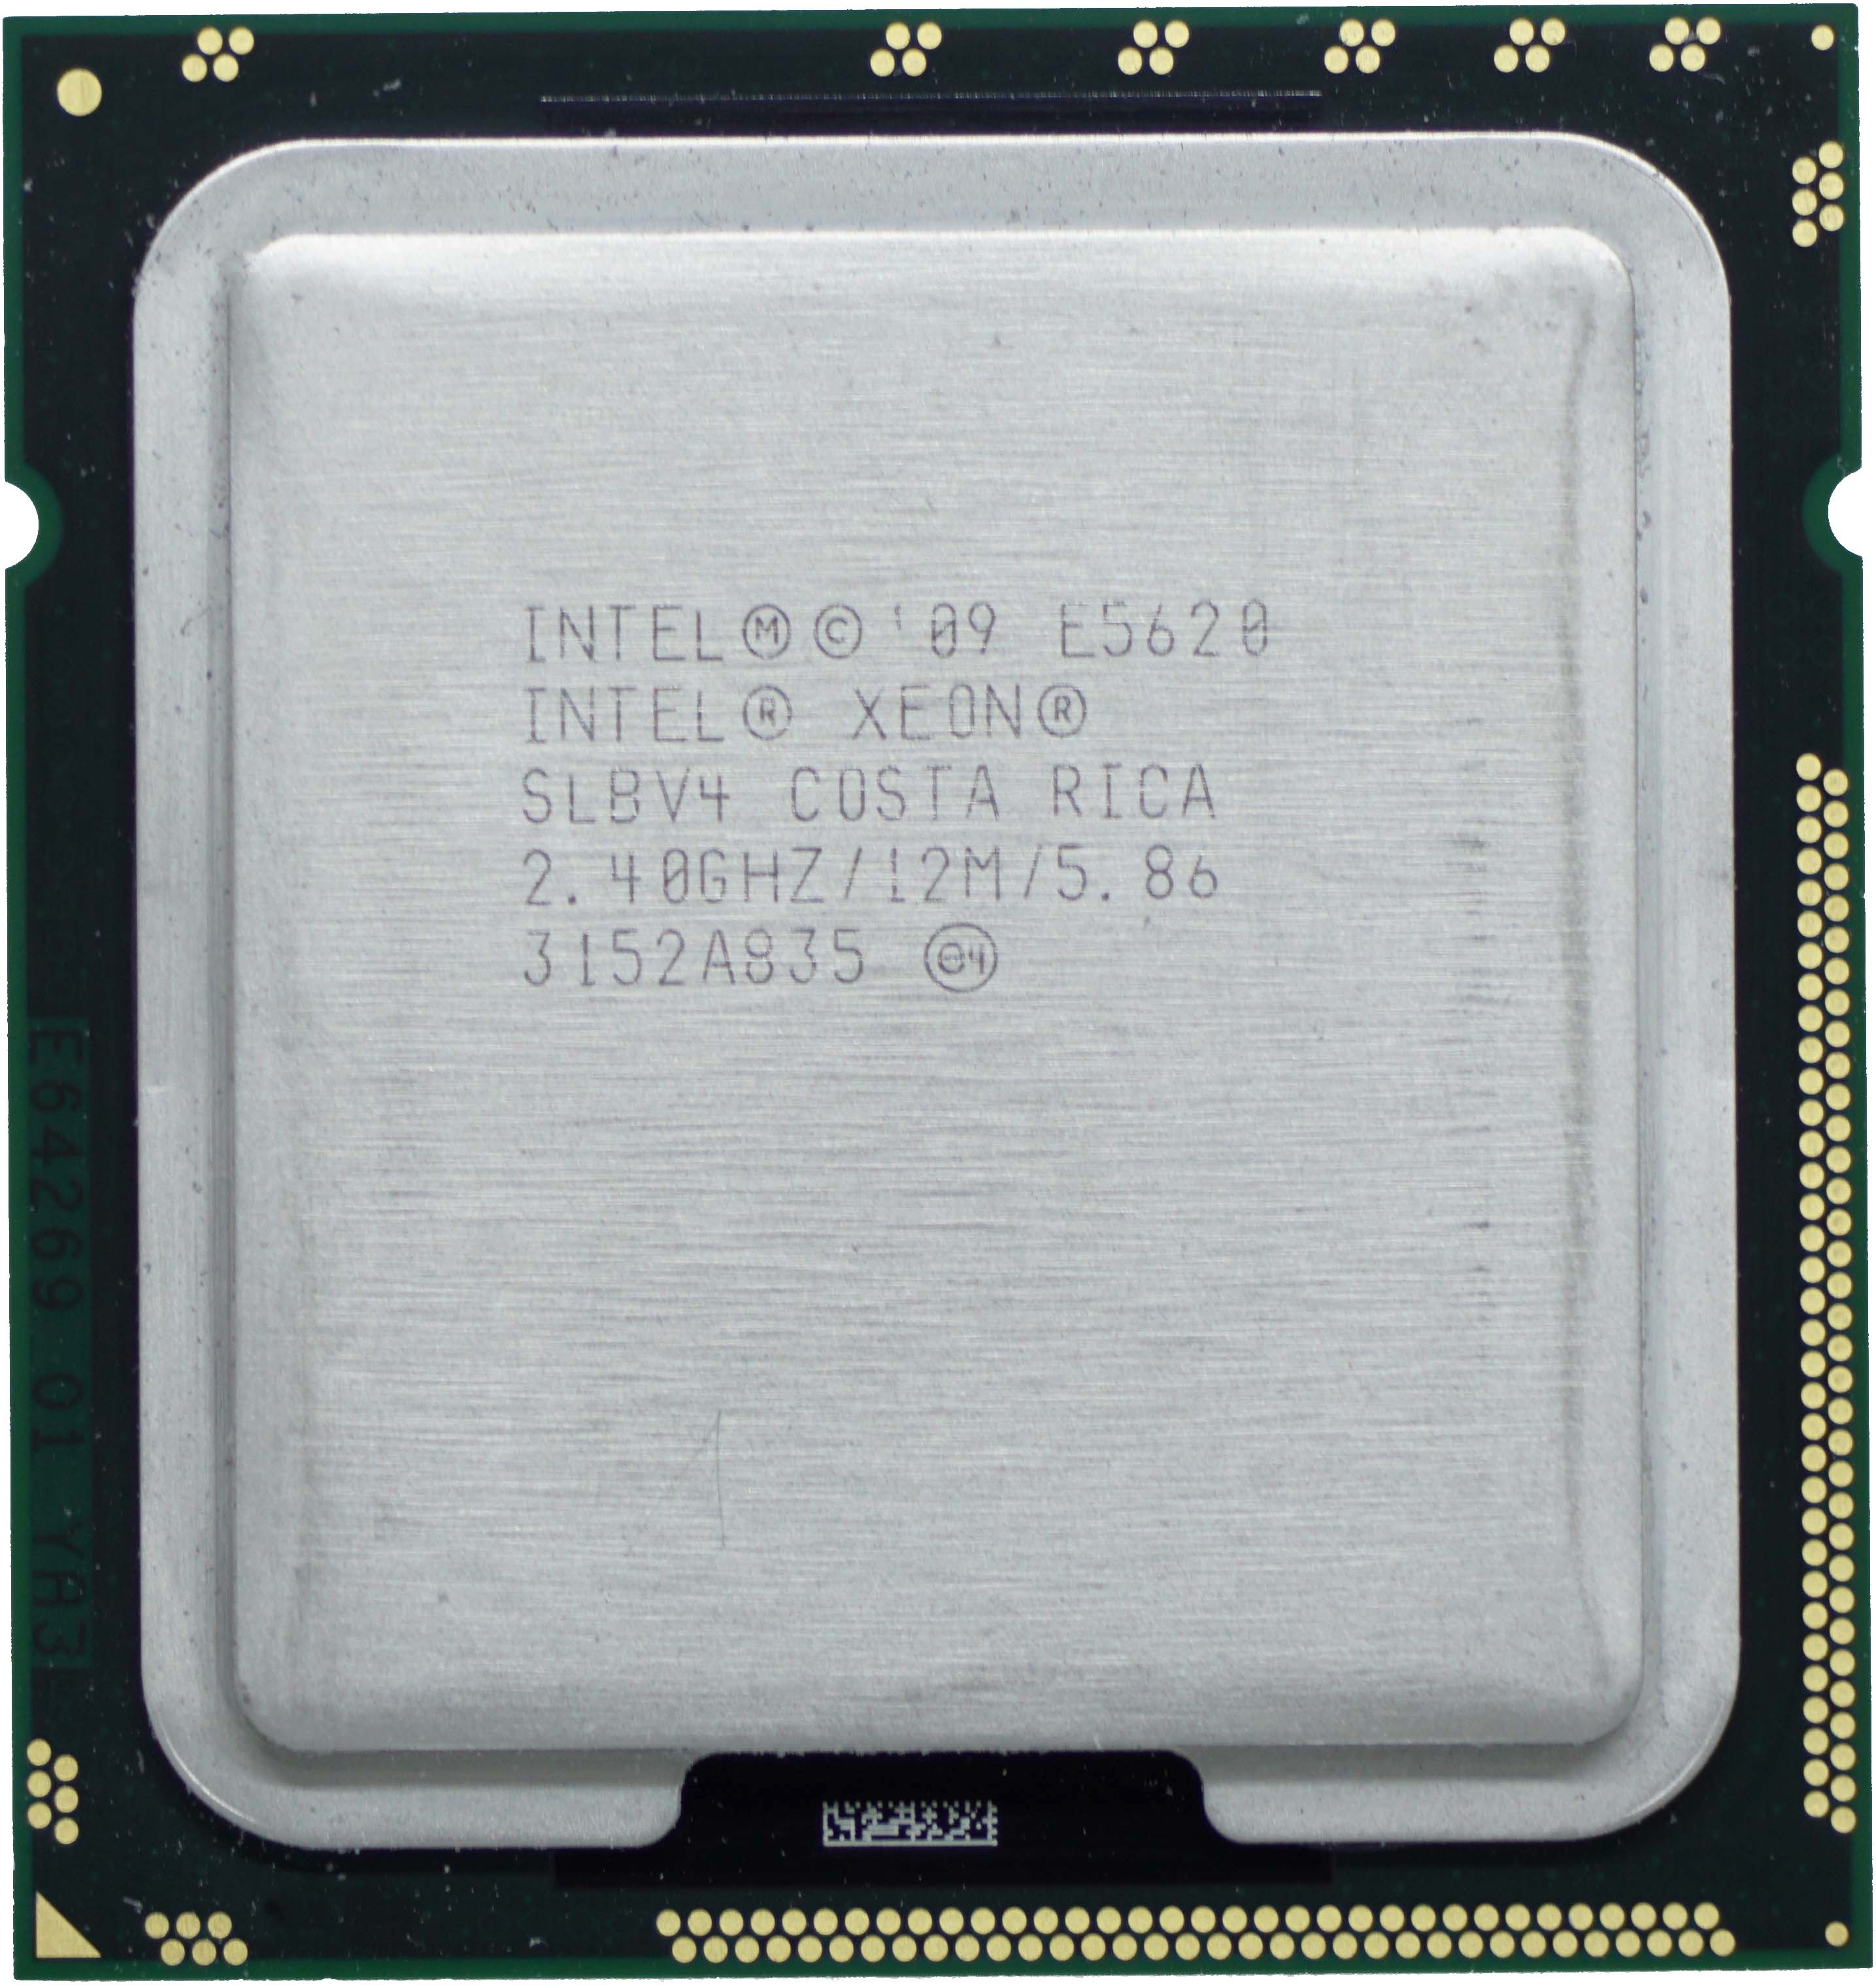 SLBV4 Intel Xeon E5620 (SLBV4) 2.40Ghz Quad (4) Core LGA1366 80W CPU